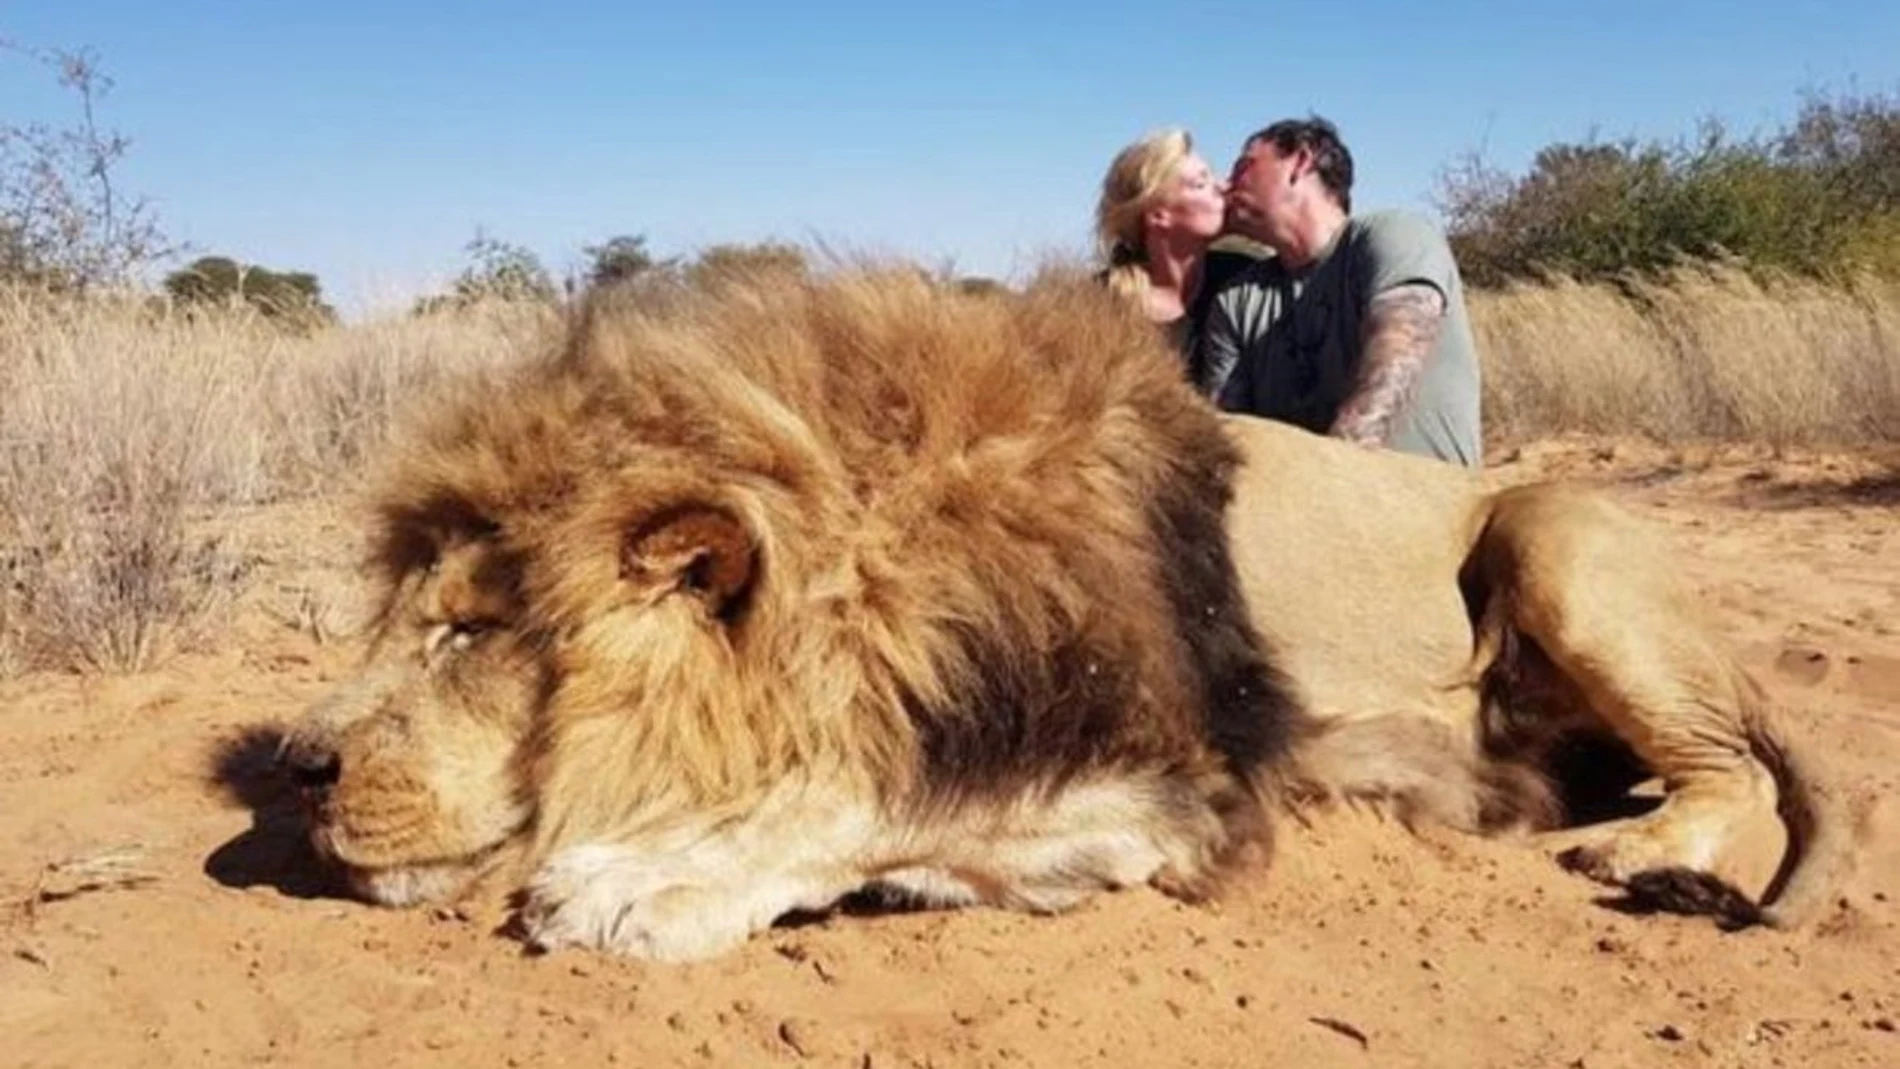 Matrimonio canadiense se besa al lado de un león abatido